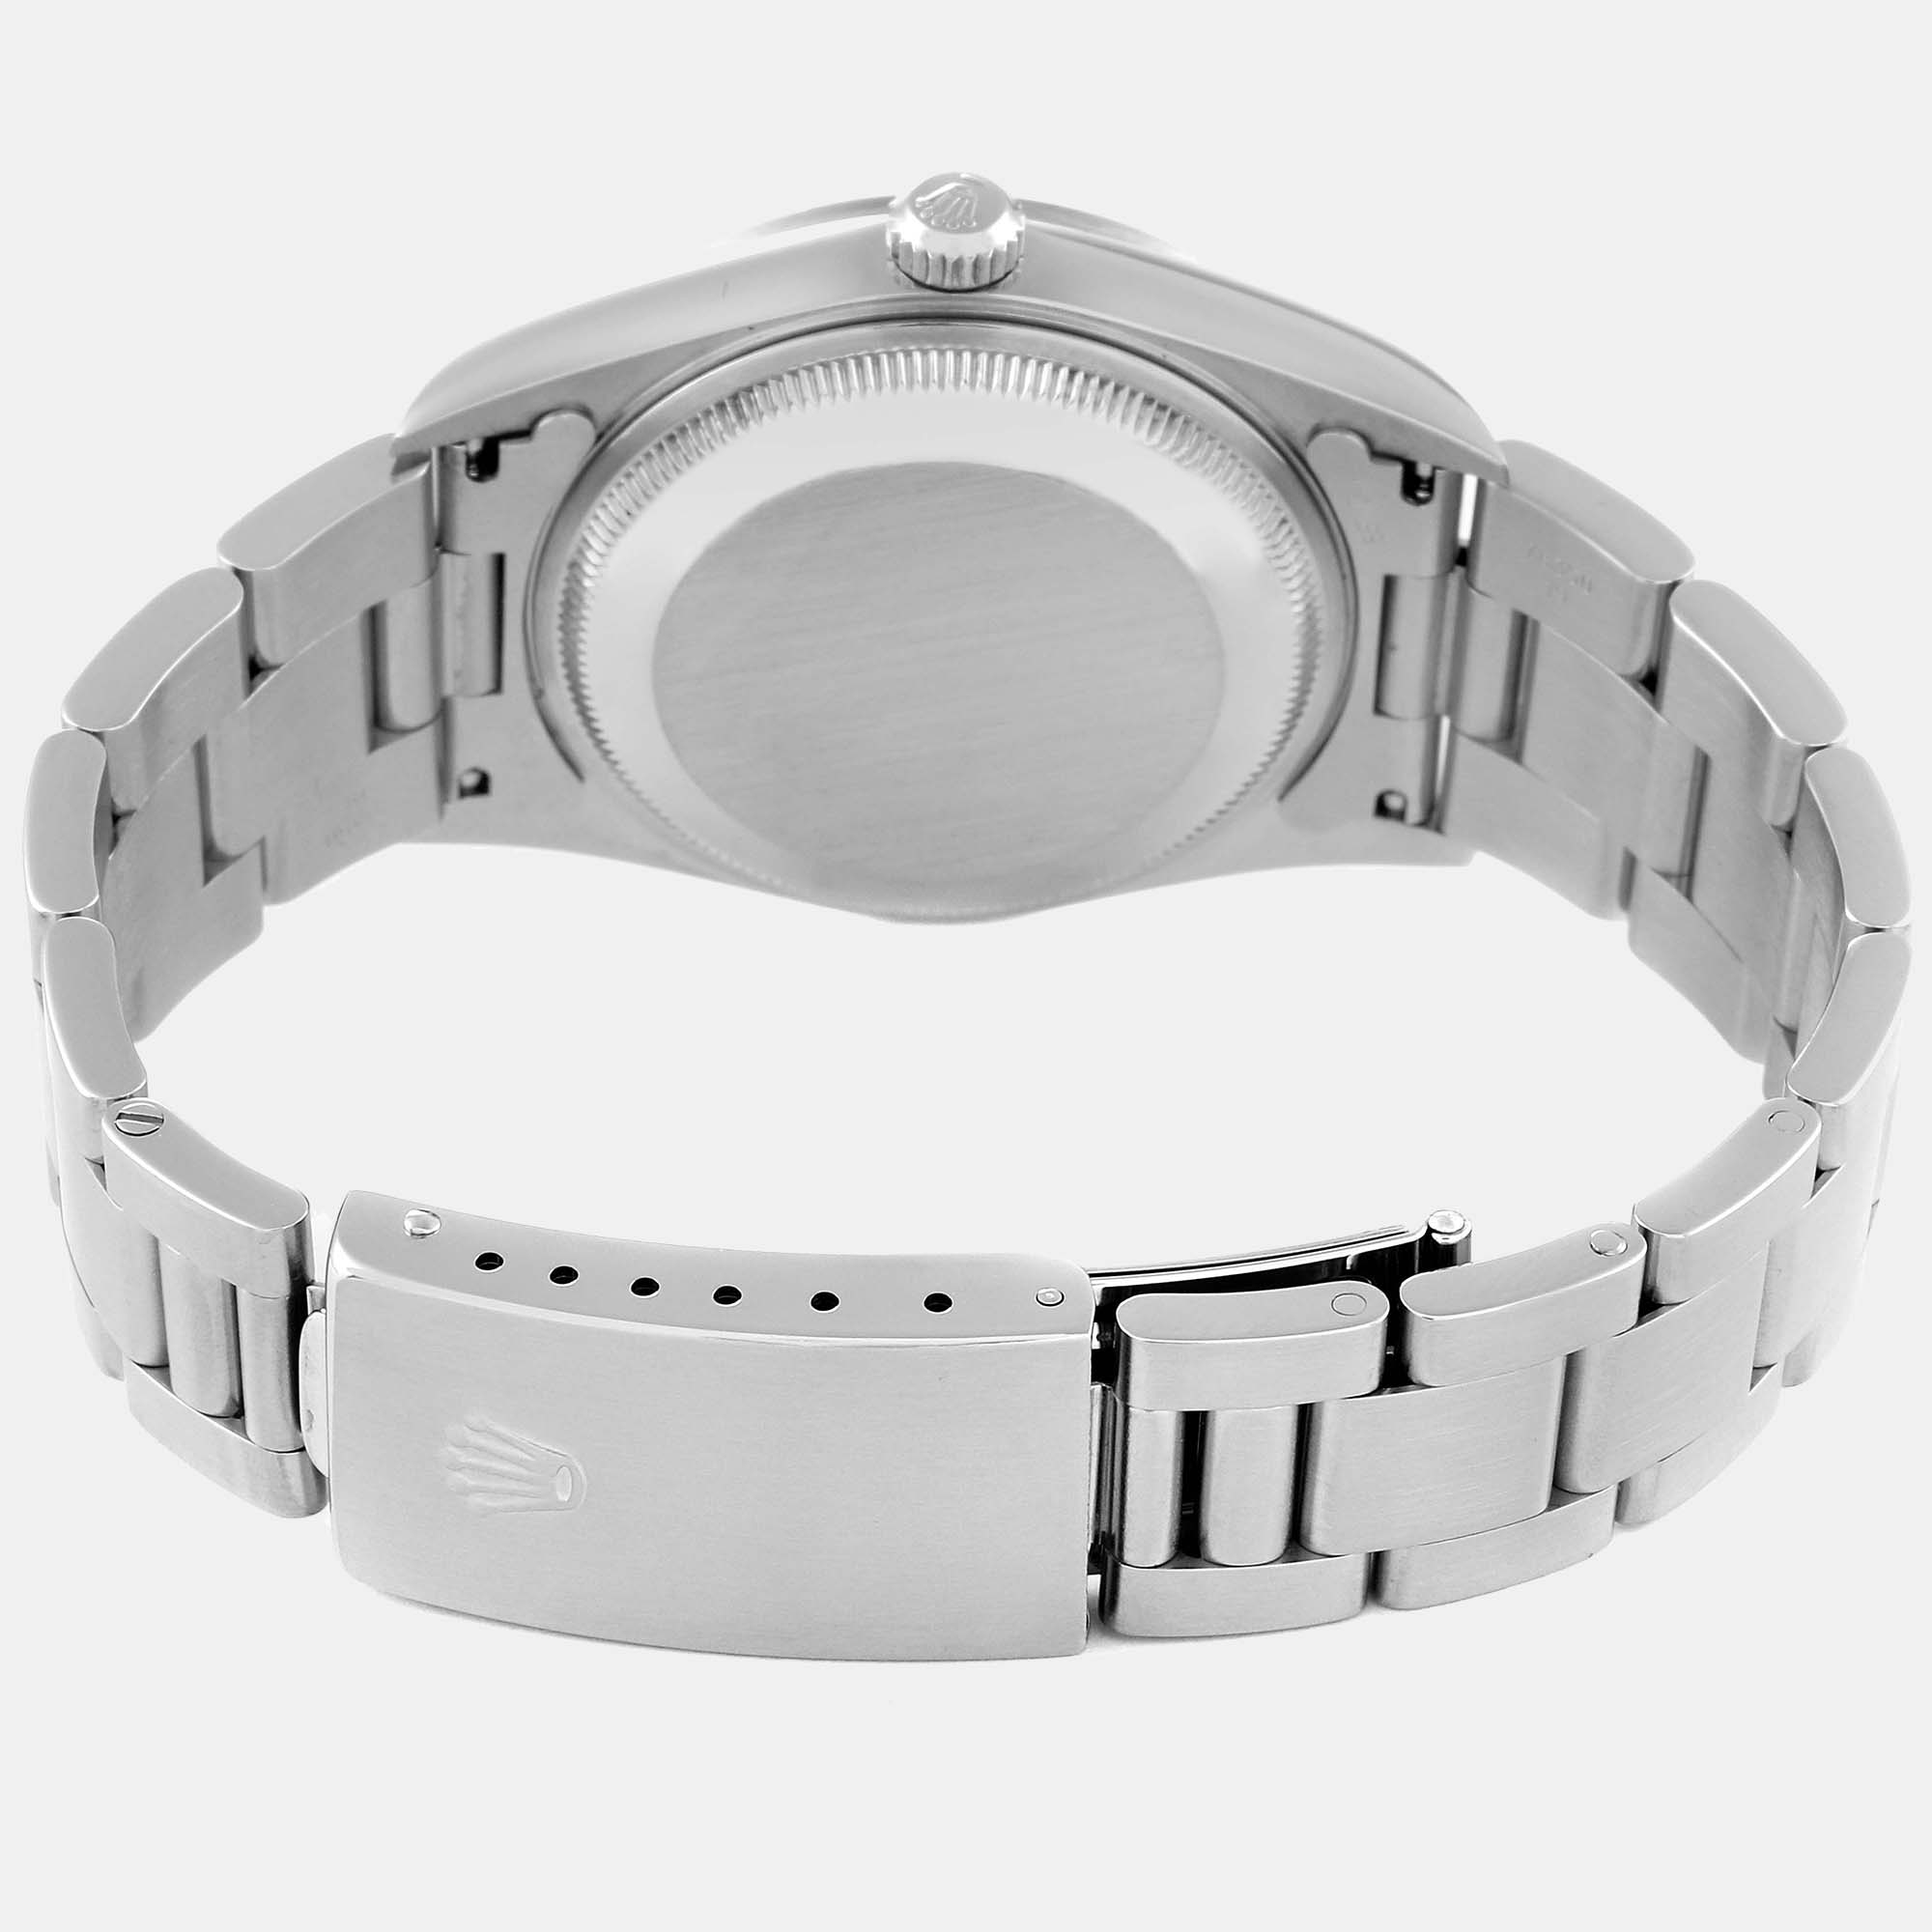 Rolex Date Black Dial Oyster Bracelet Steel Men's Watch 15200 34 Mm